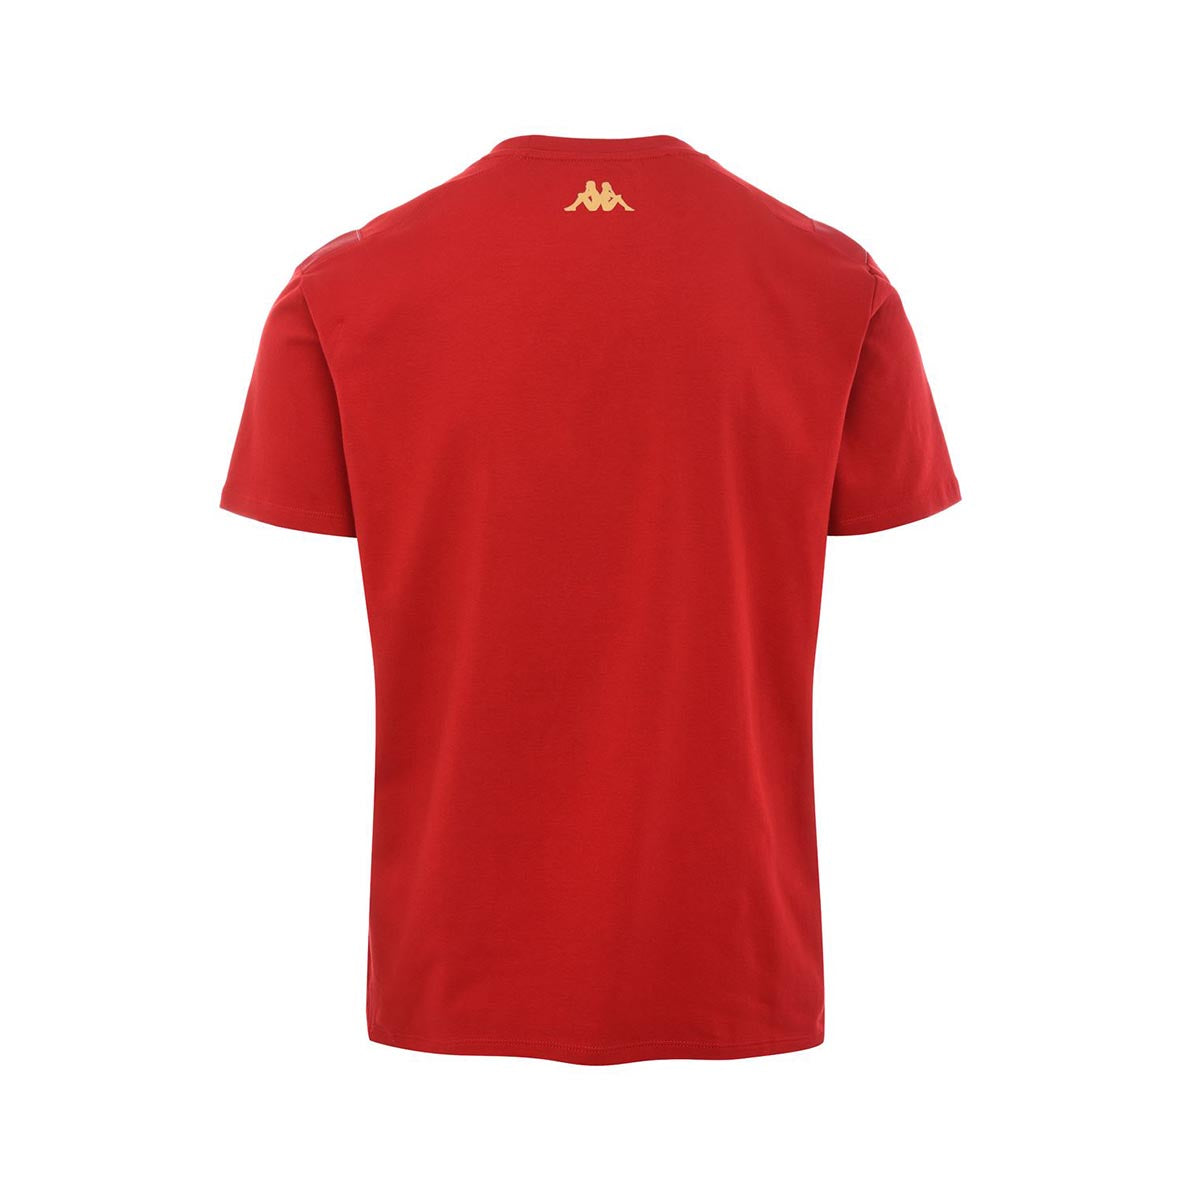 T-shirt Arhom AS Monaco Rouge Homme